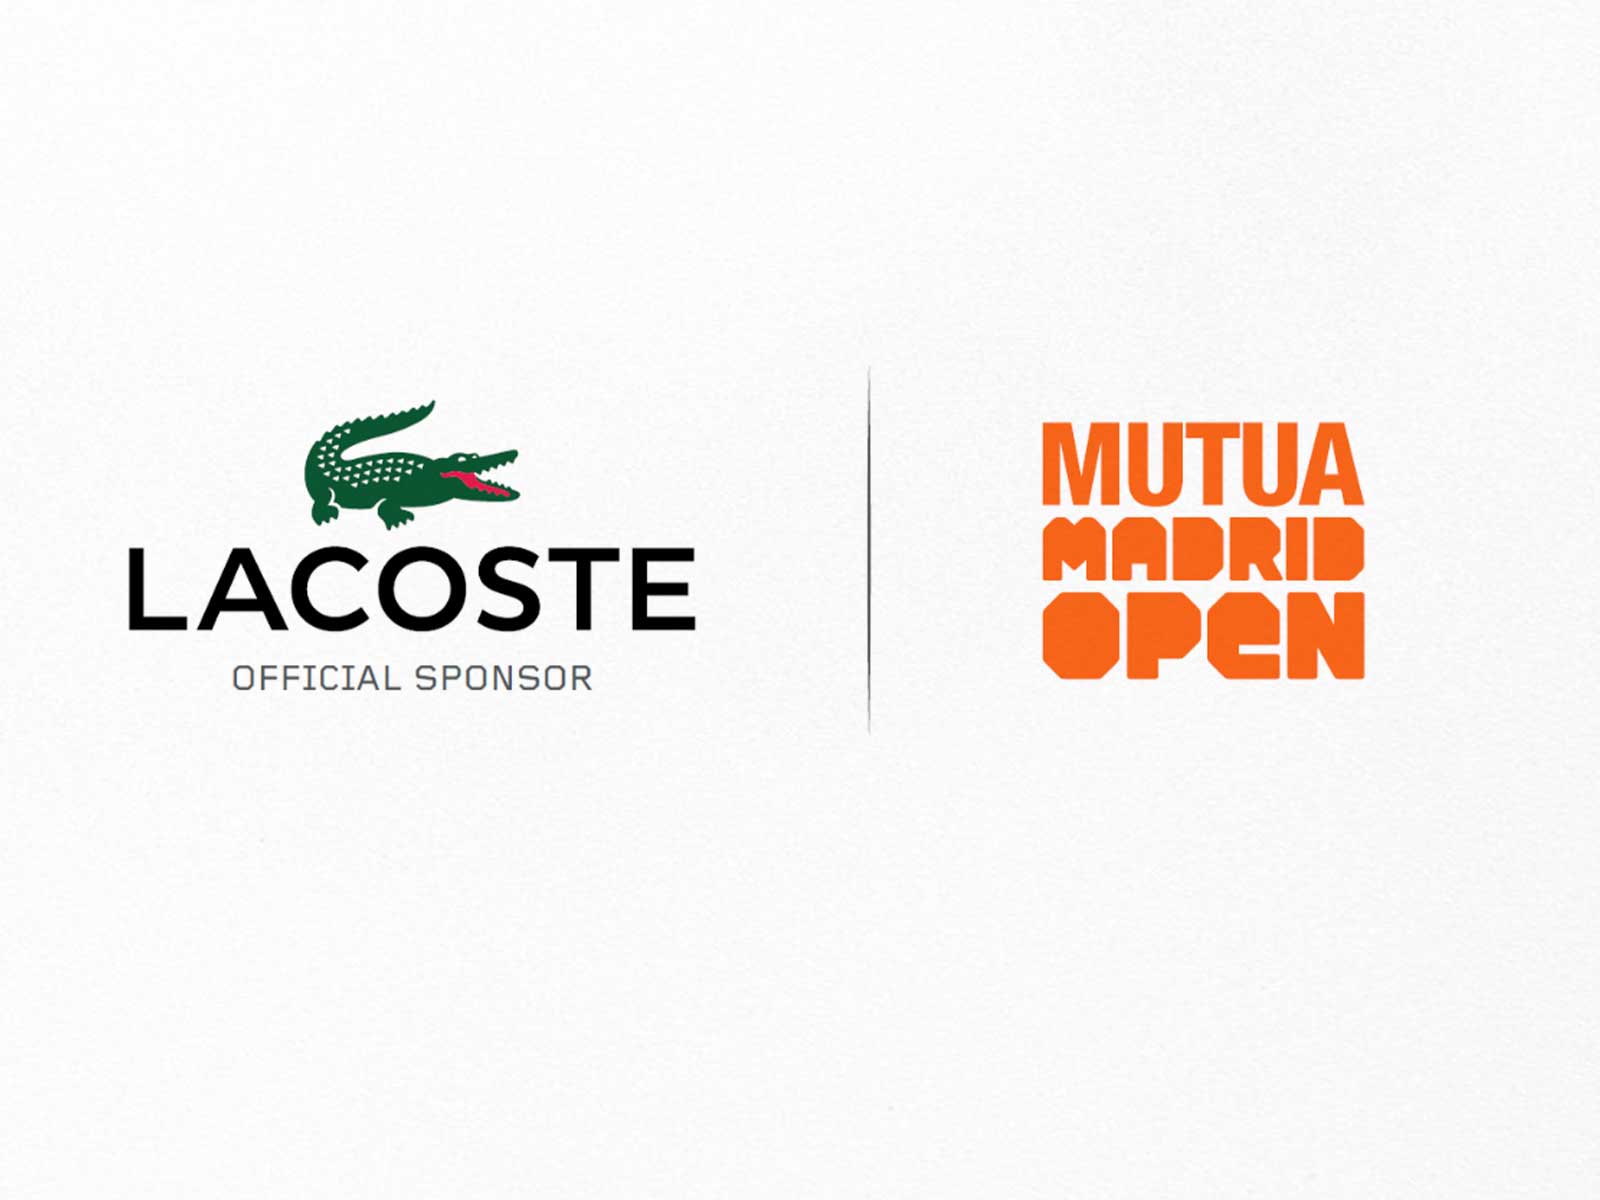 Lacoste, socio oficial del Mutua Madrid Open